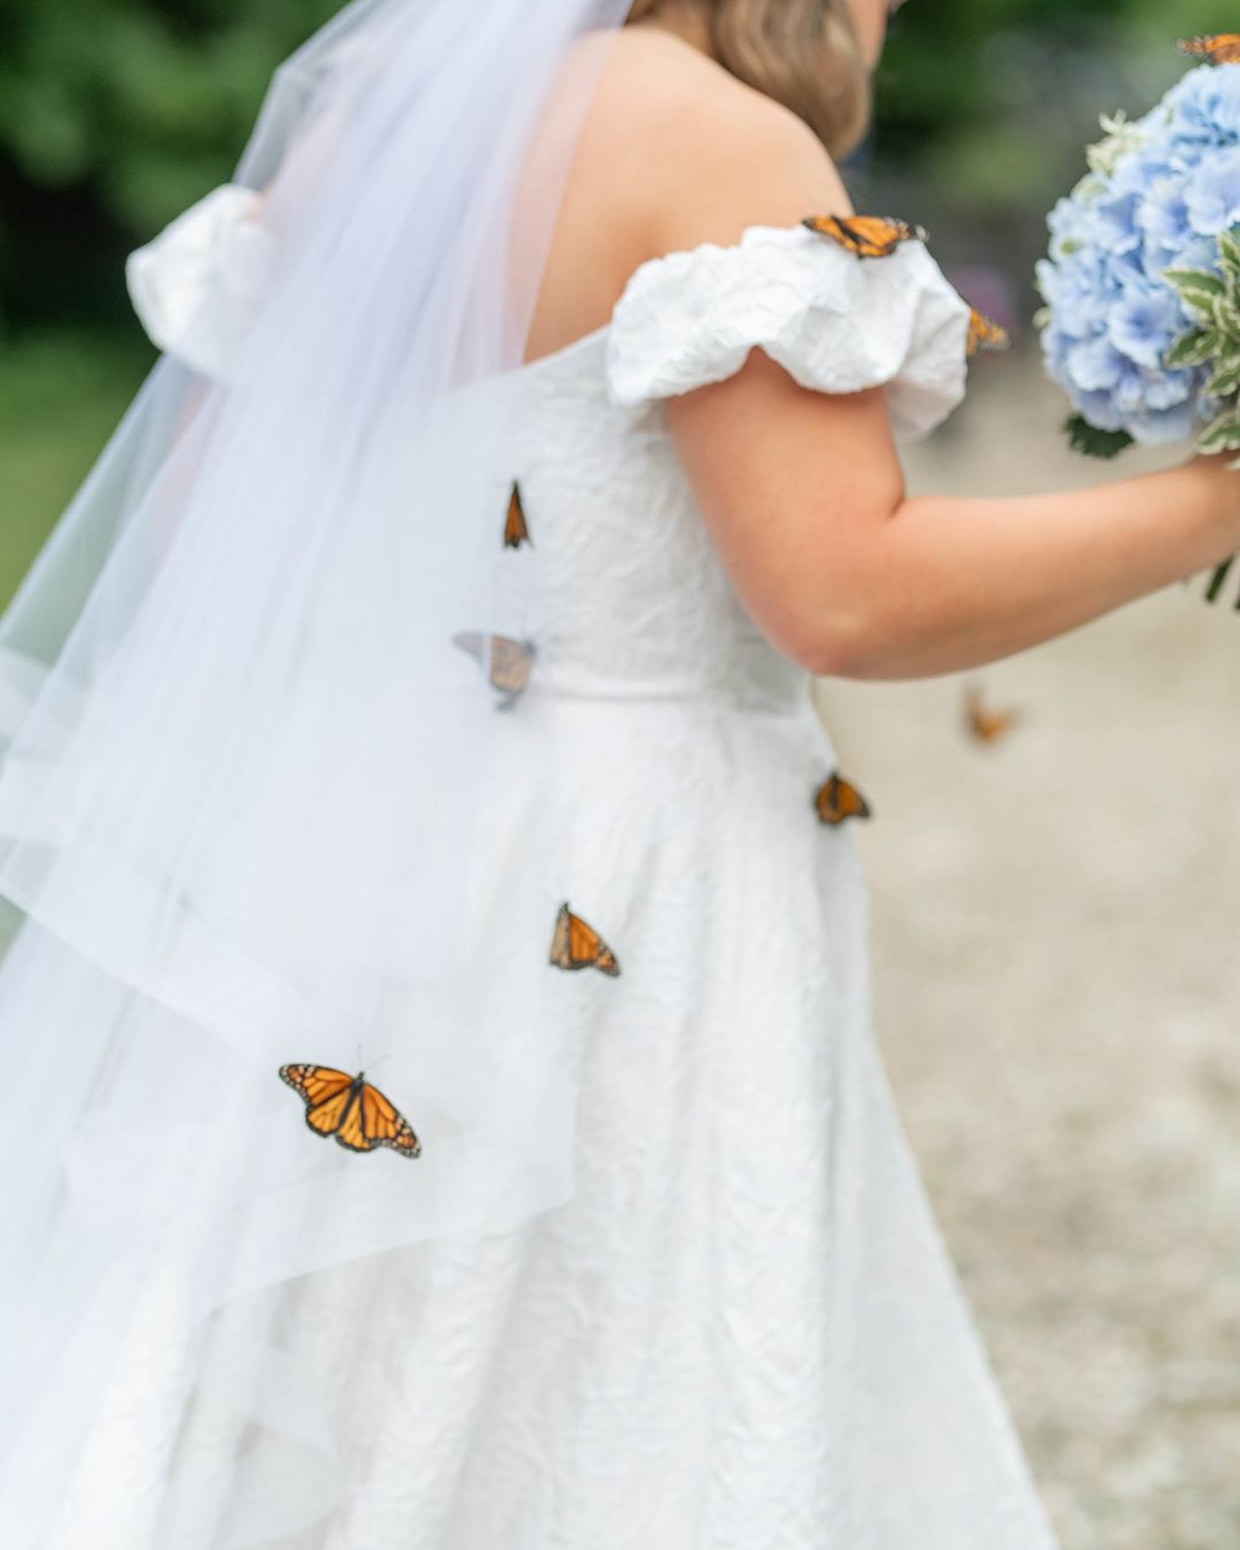 Butterflies on wedding dress